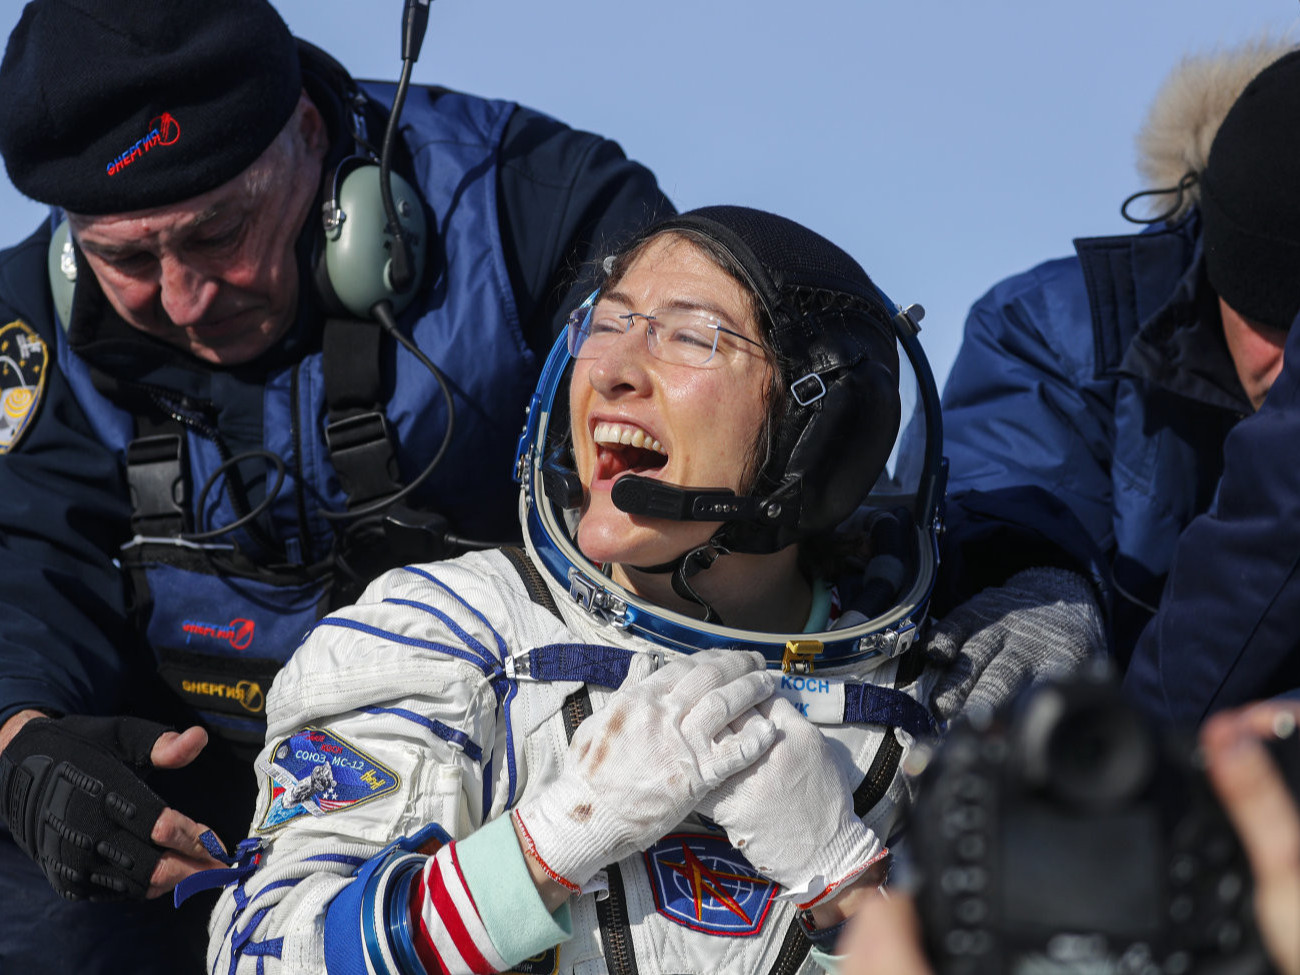 ВИДЕО: Сансарт хамгийн удаан хугацаанд ниссэн эмэгтэй дэлхийд бууж ирэв